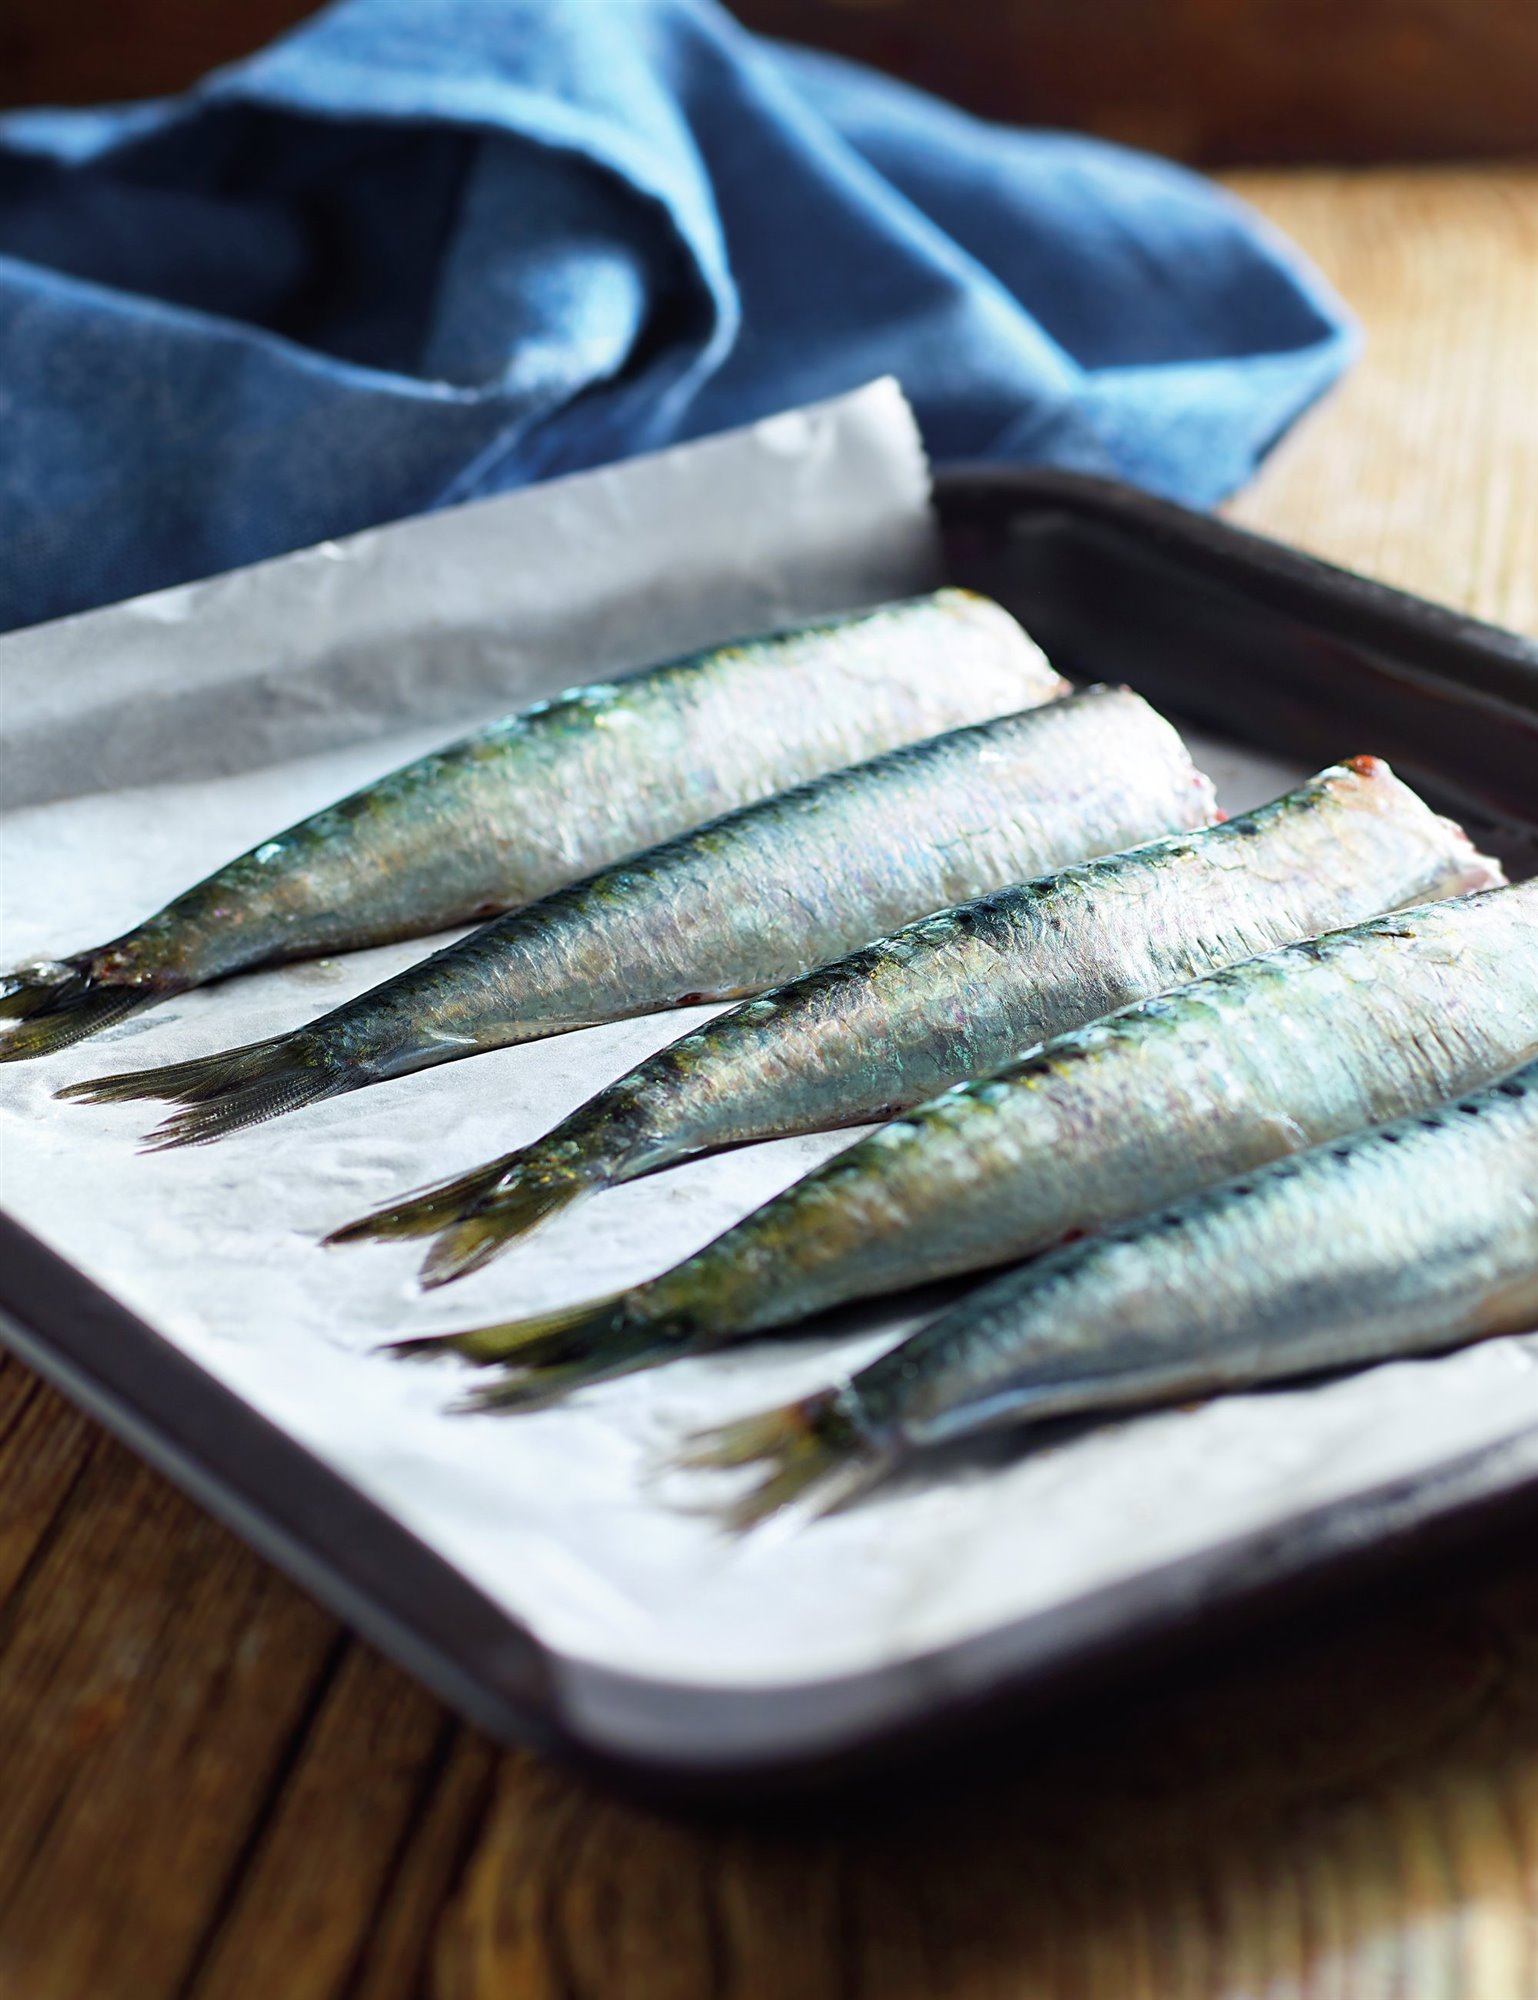 2. Limpia las sardinas